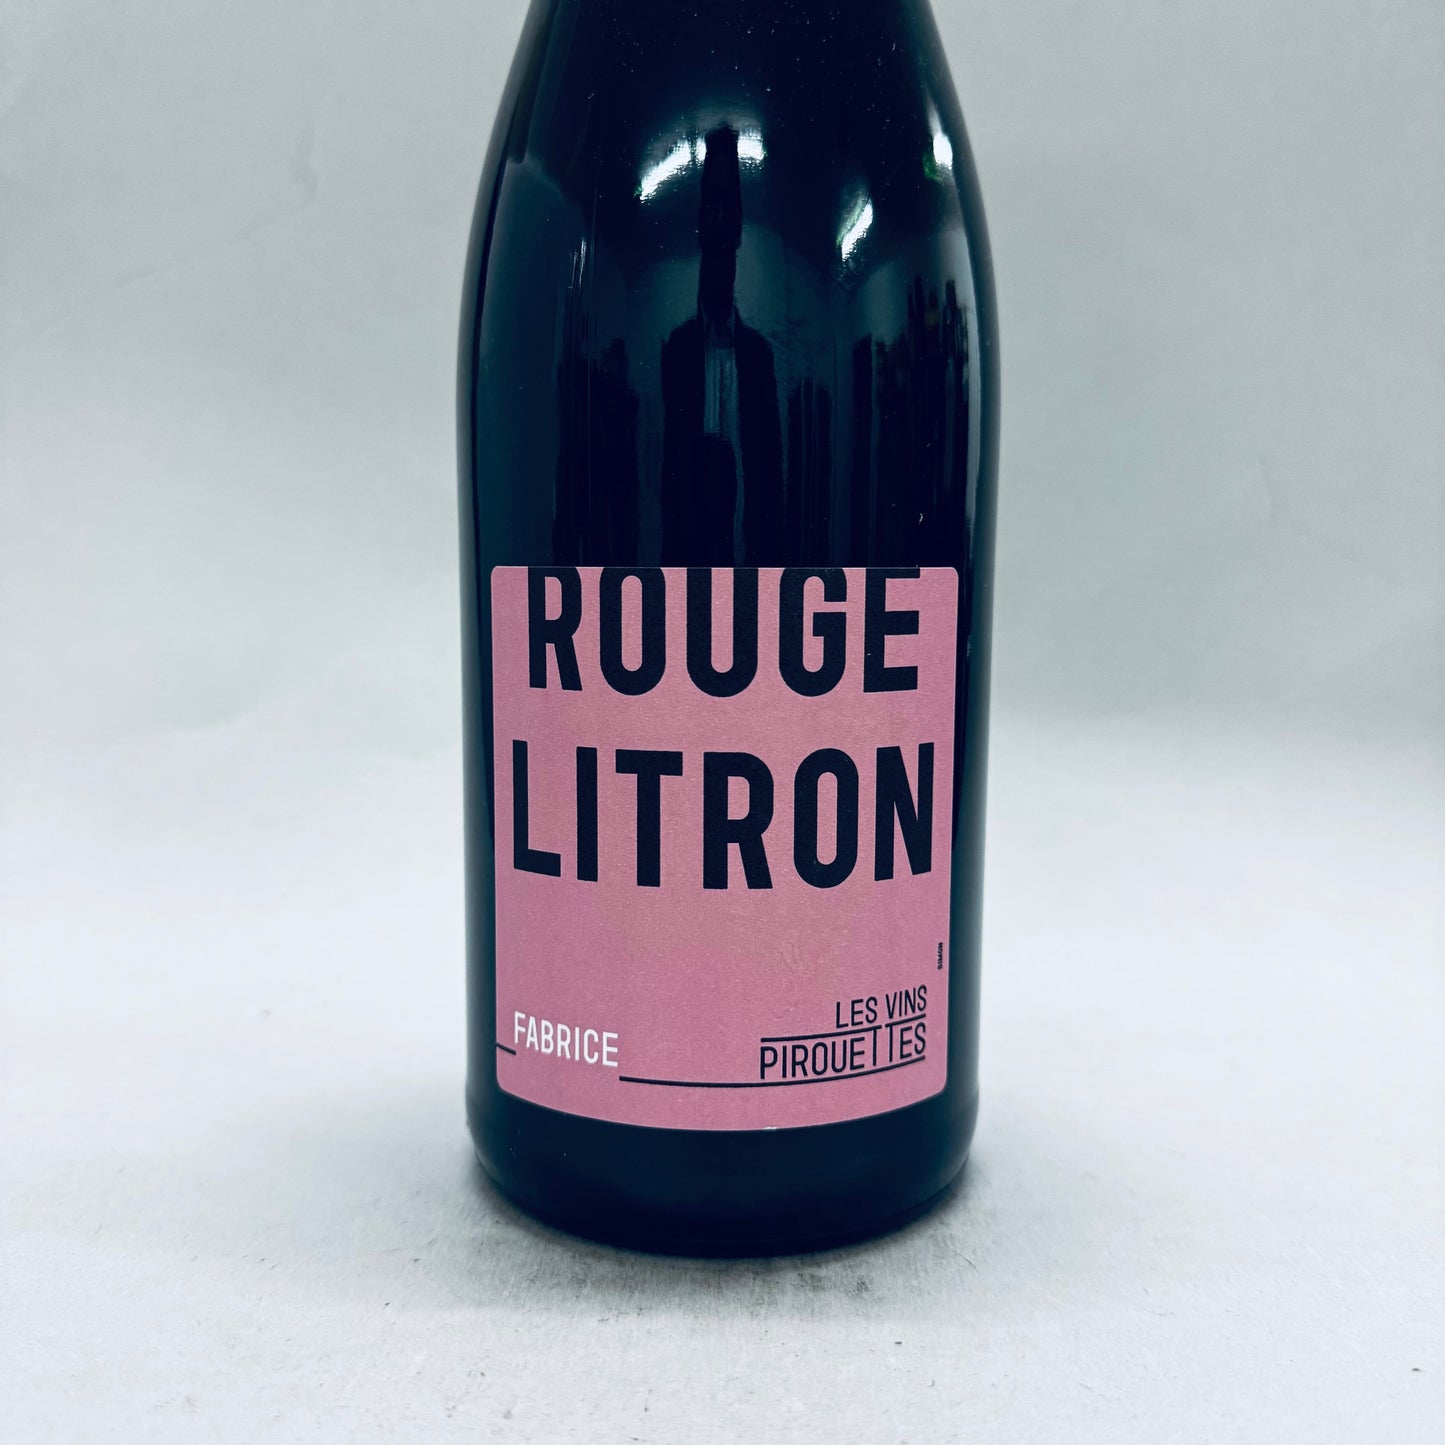 2022 Les Vins Pirouettes Litron Rouge de Fabrice